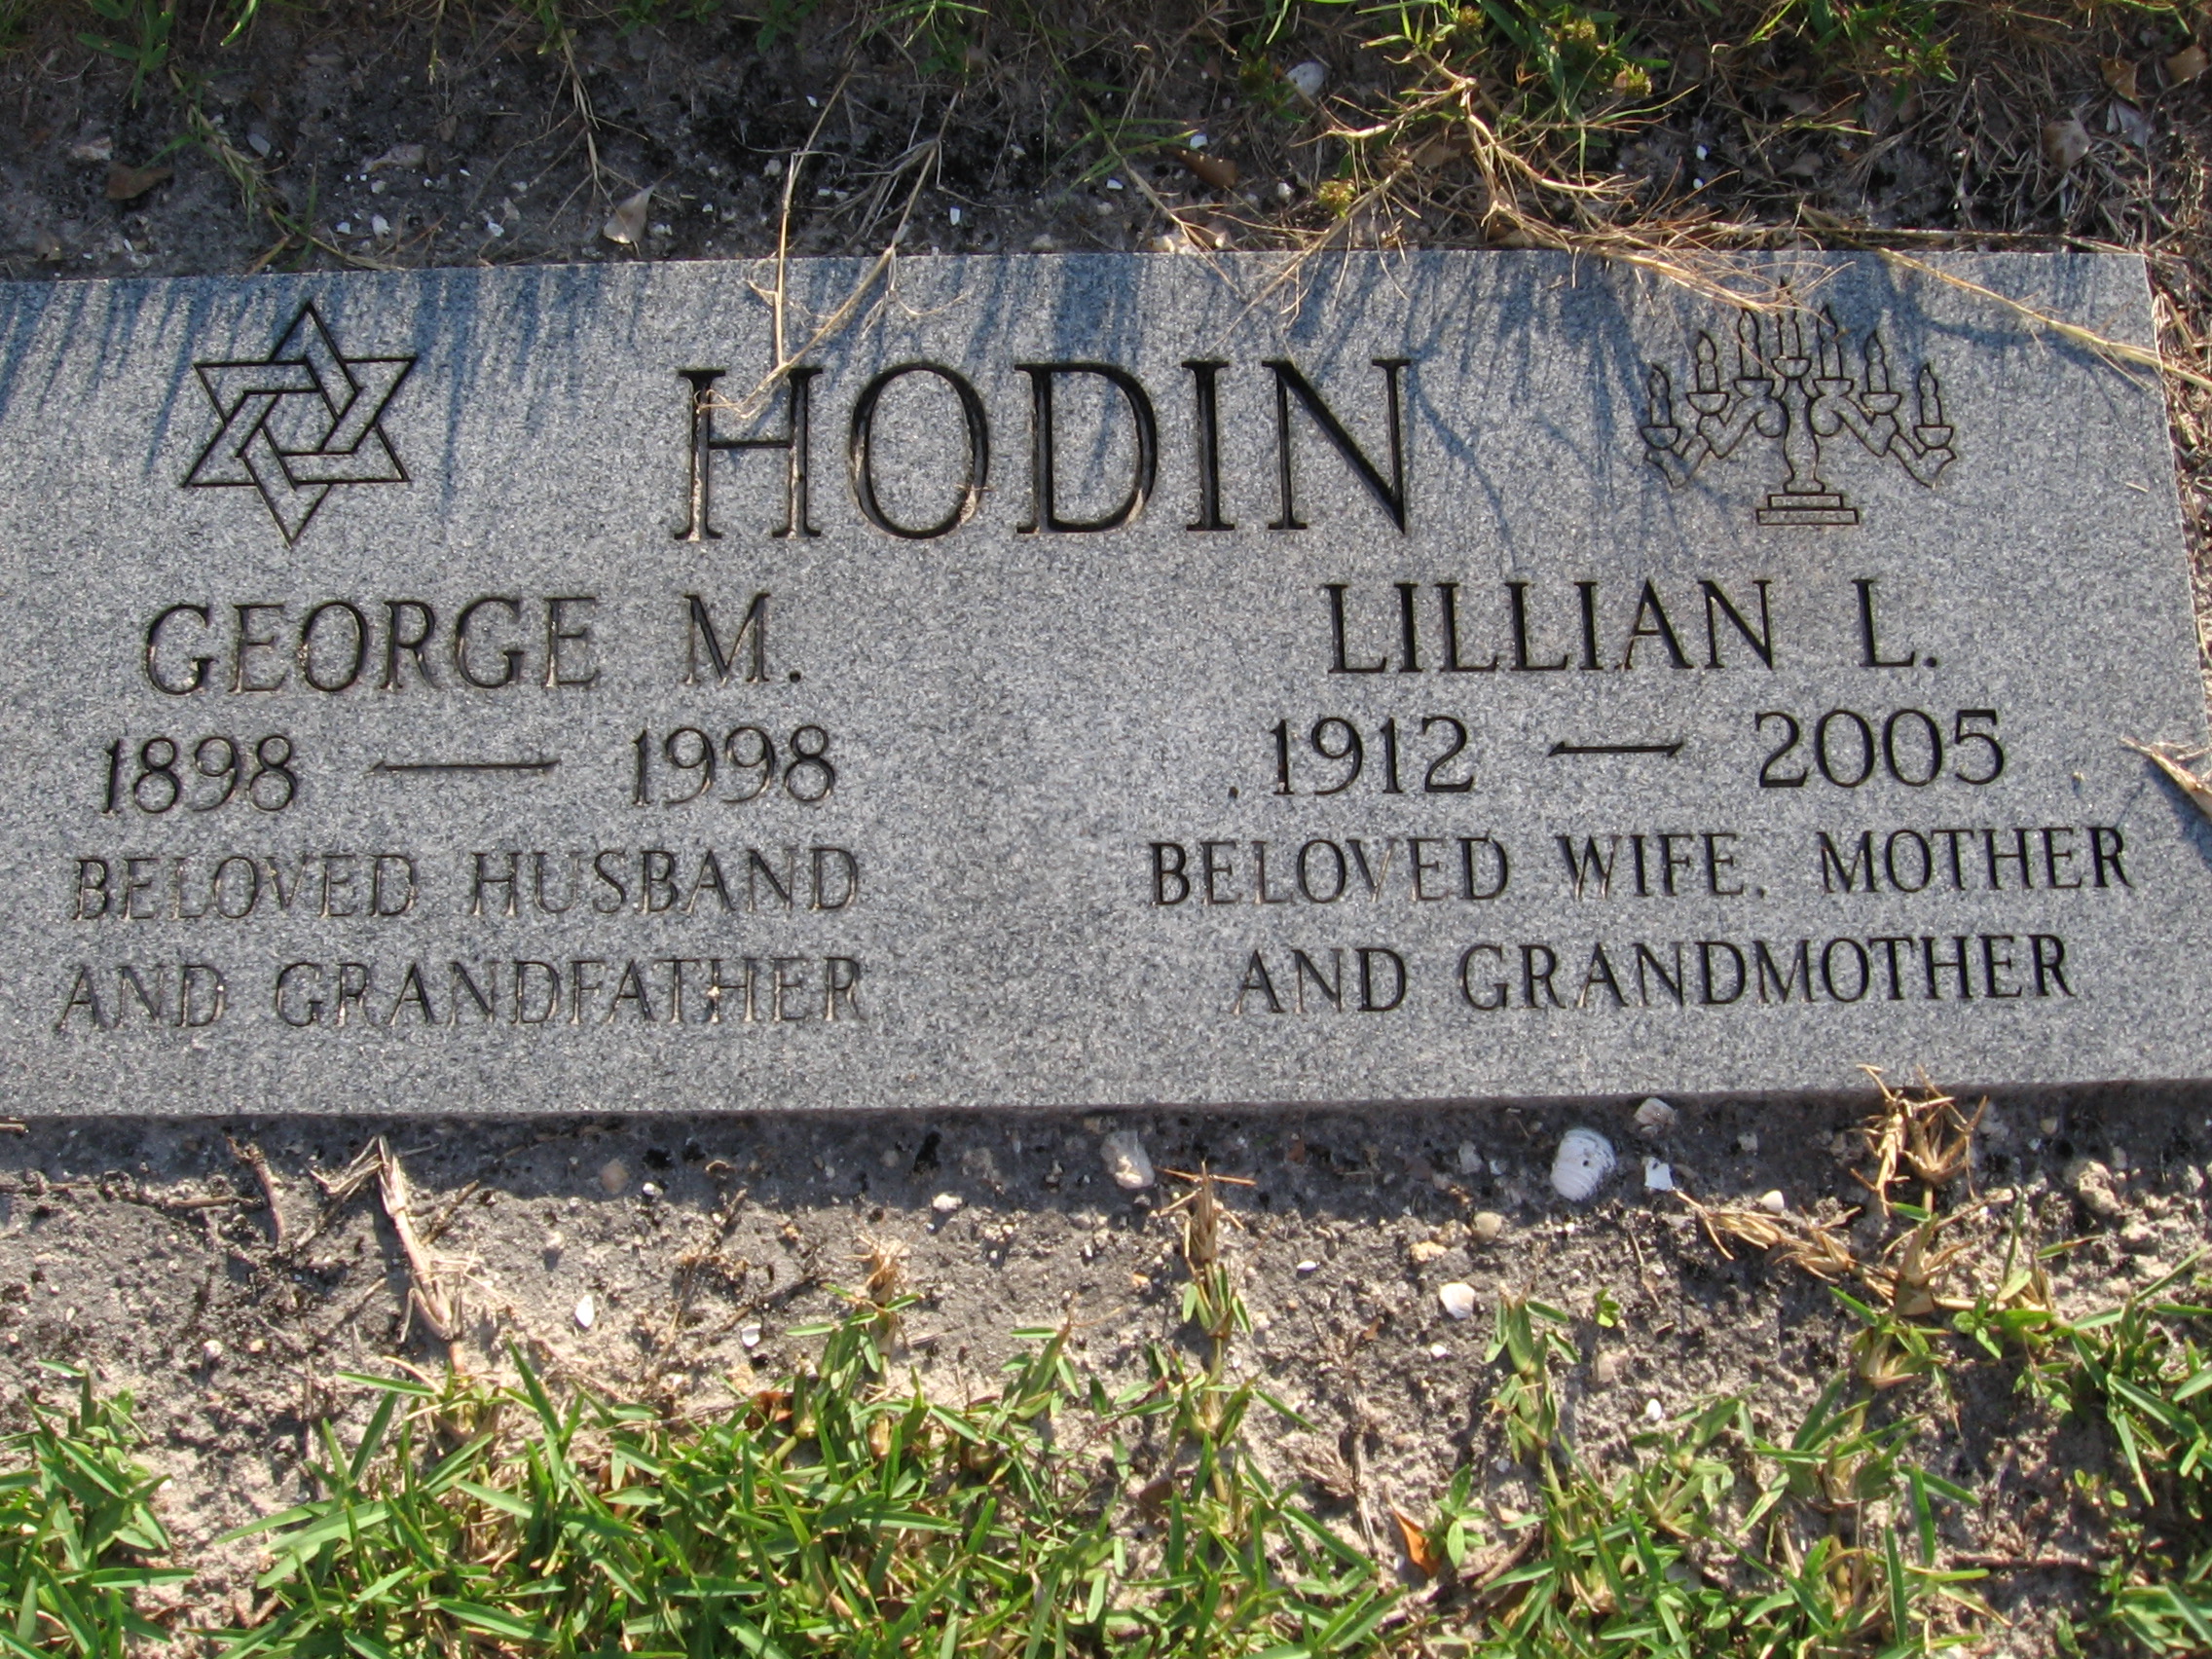 Lillian L Hodin